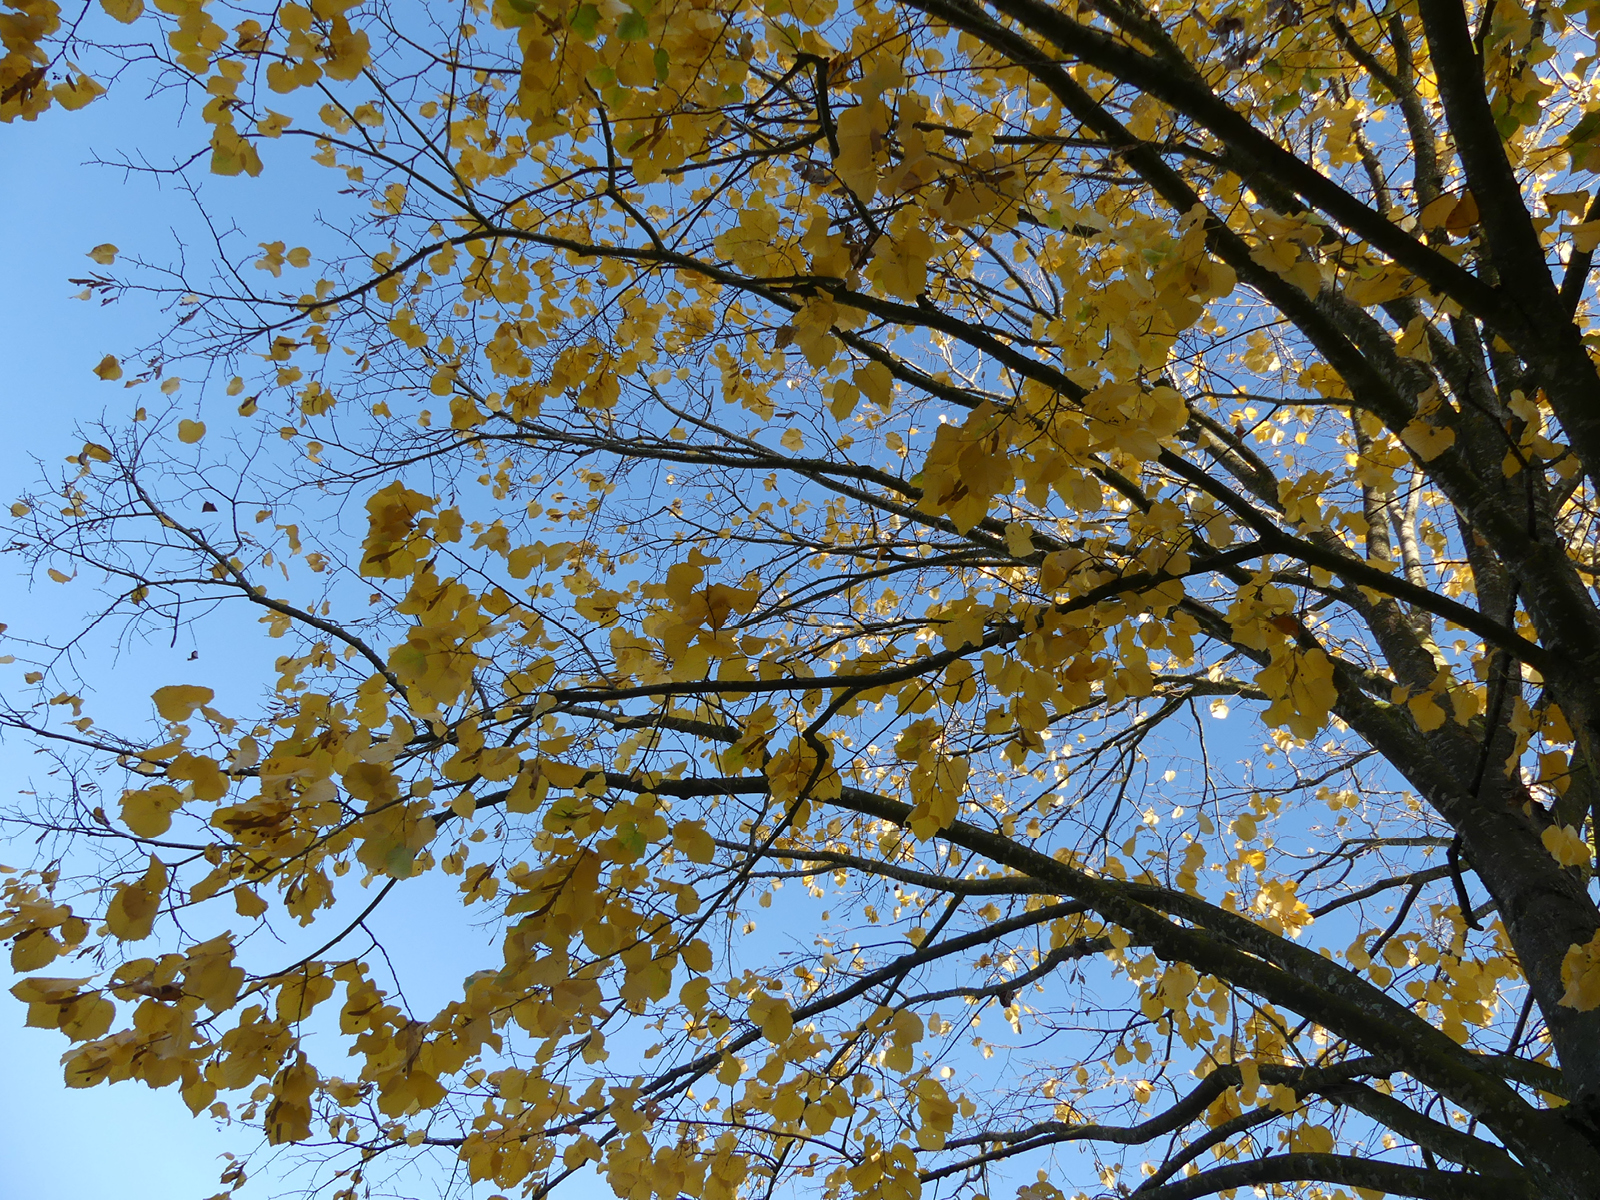 Blick nach oben in einen Baum mit gelben Blättern, darüber strahlend blauer Himmel.